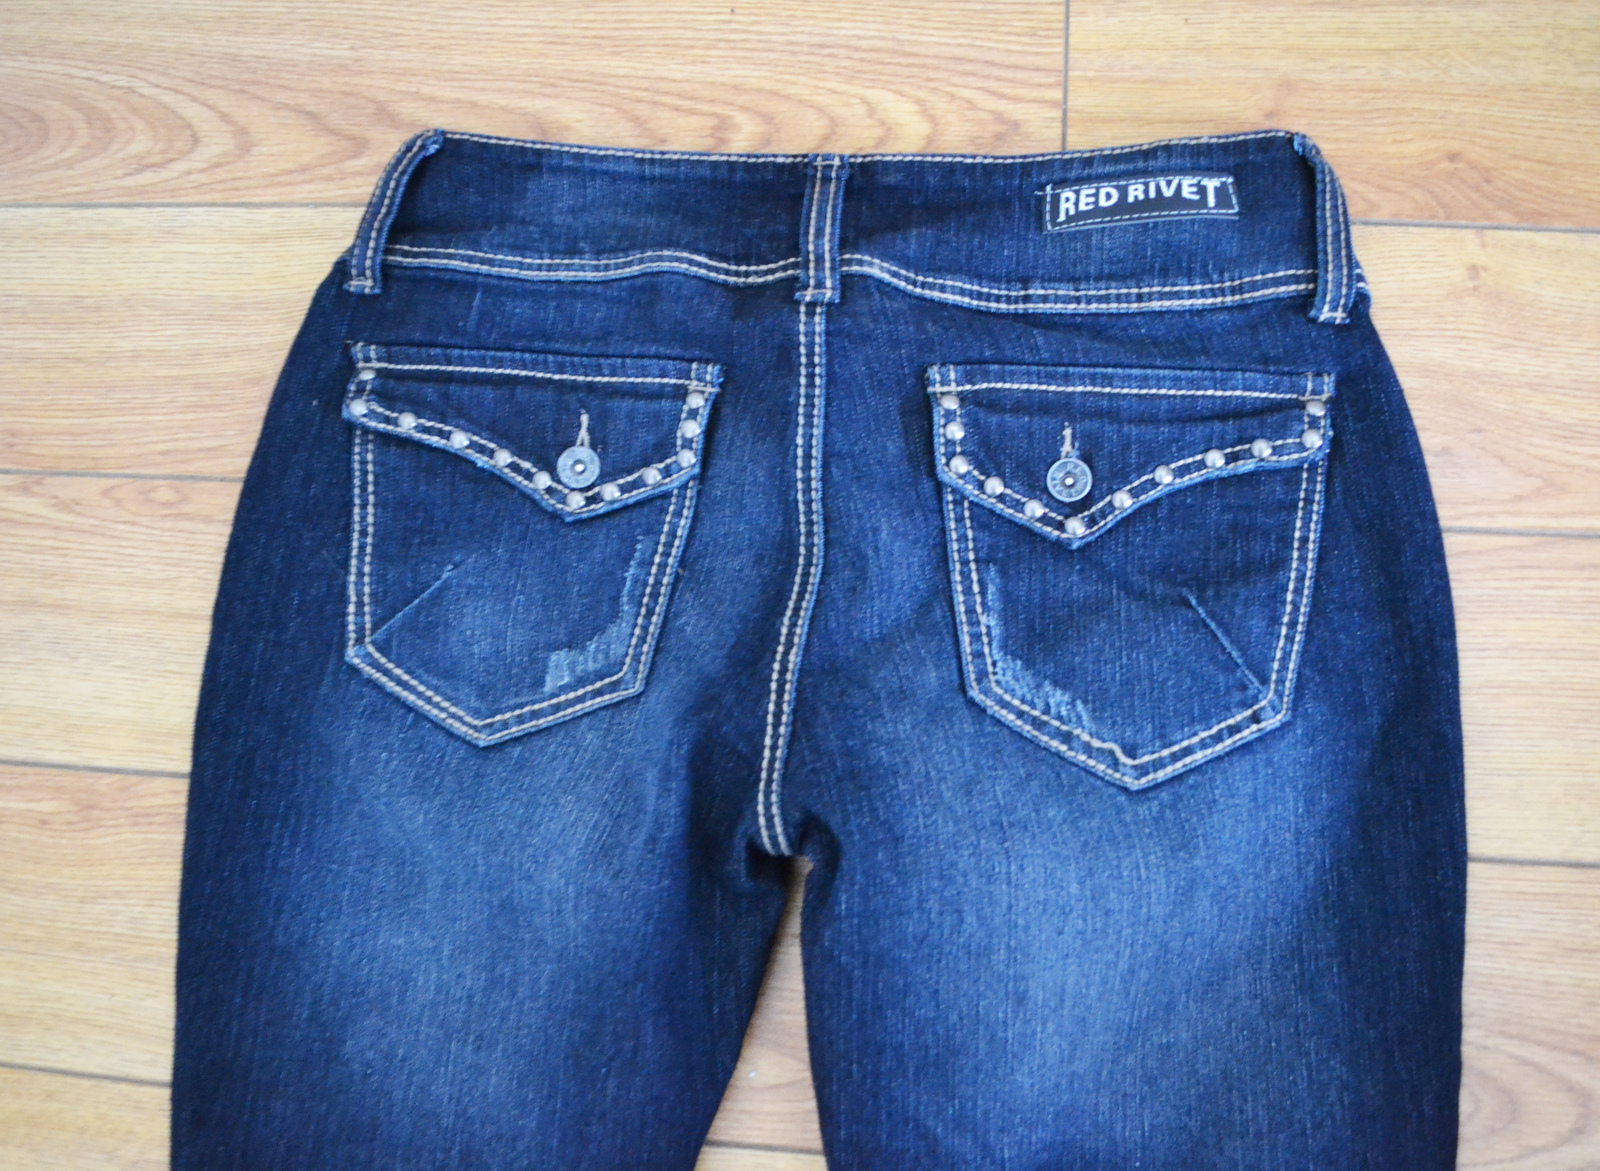 Red Rivet Denim Jeans Juniors Size 15 - Jeans